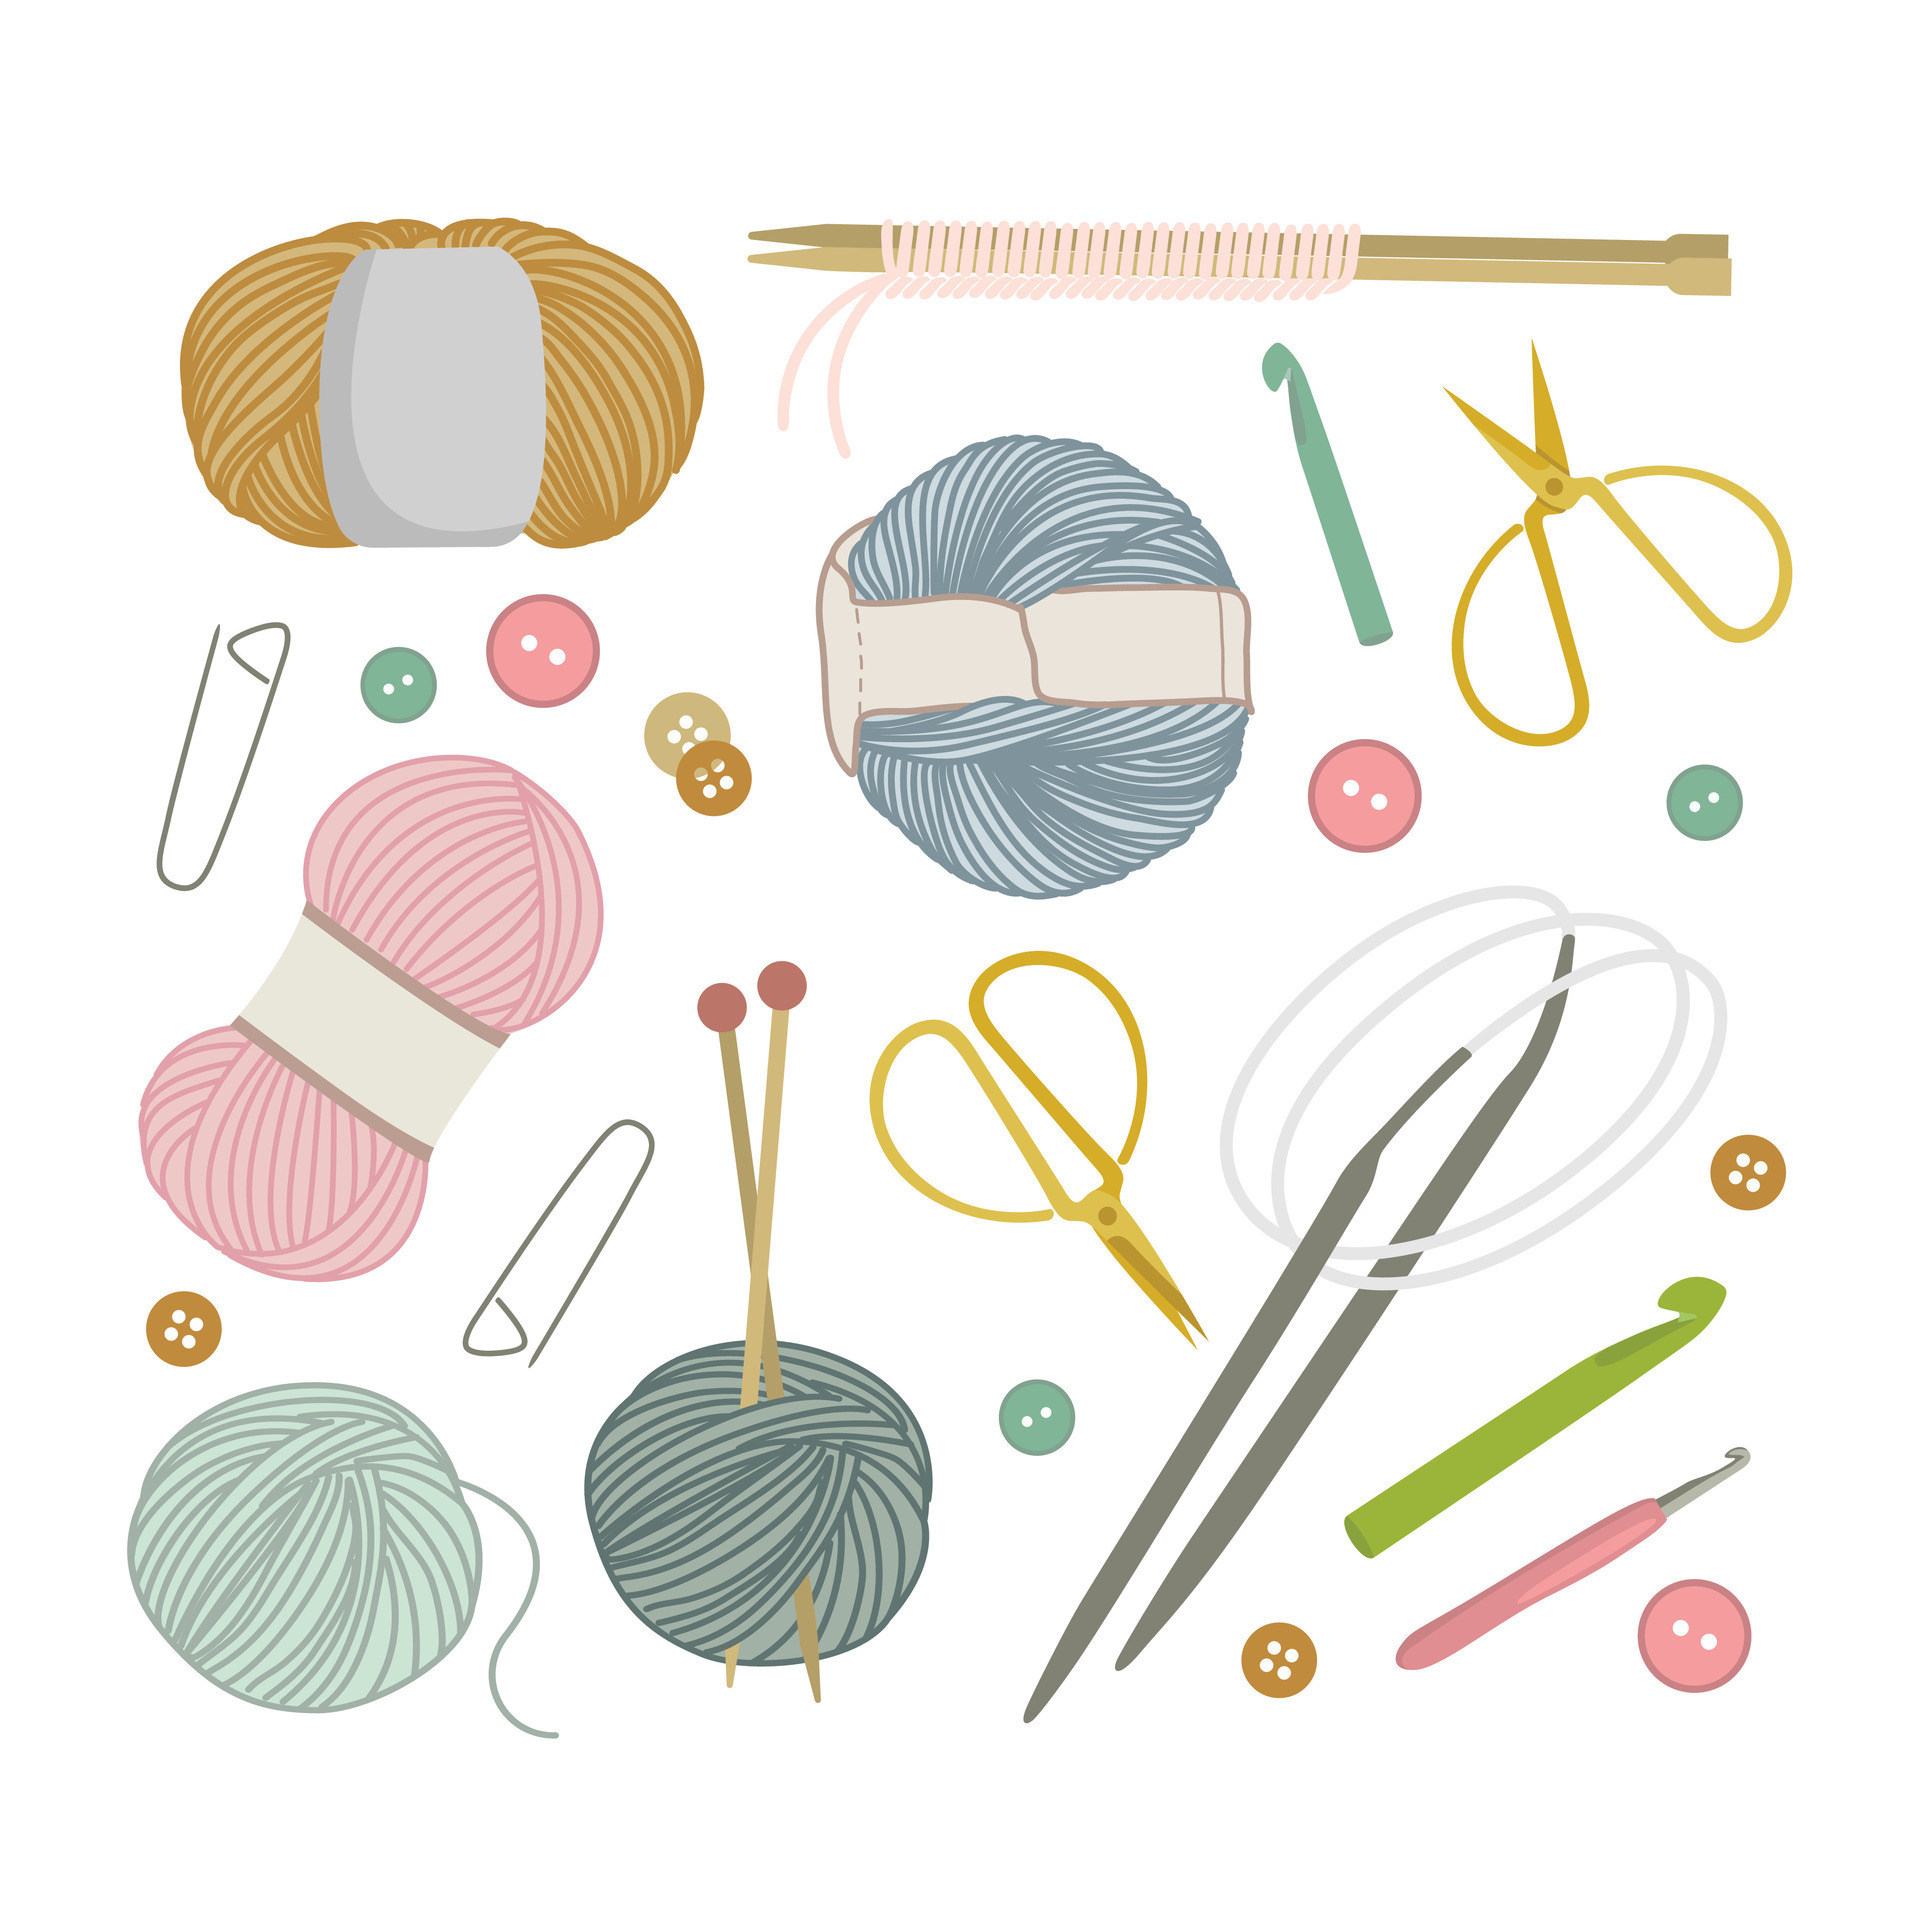 Knitting Needles & Hooks